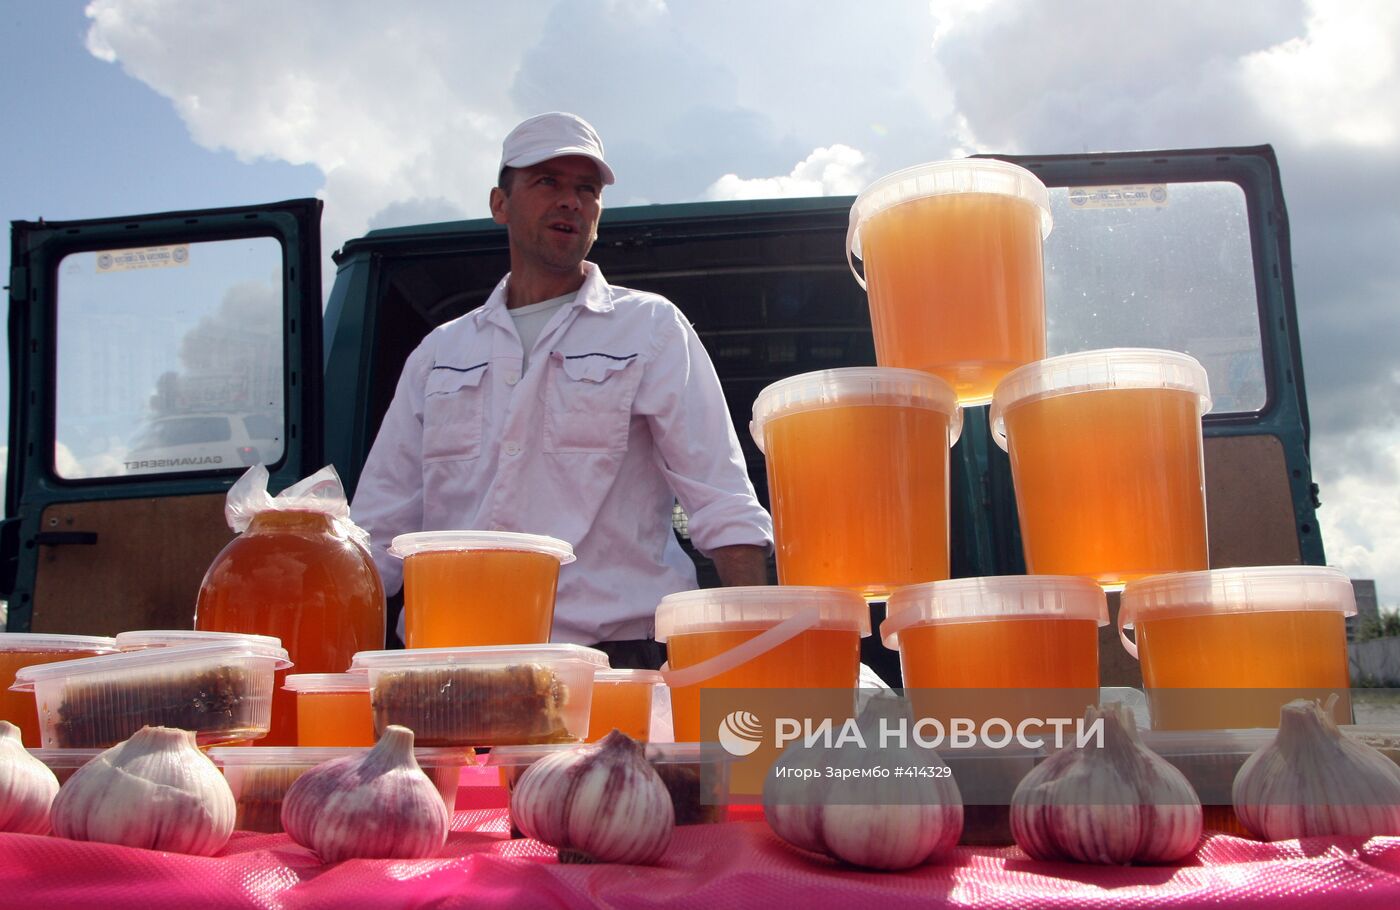 Ярмарка продовольствия в Калининграде